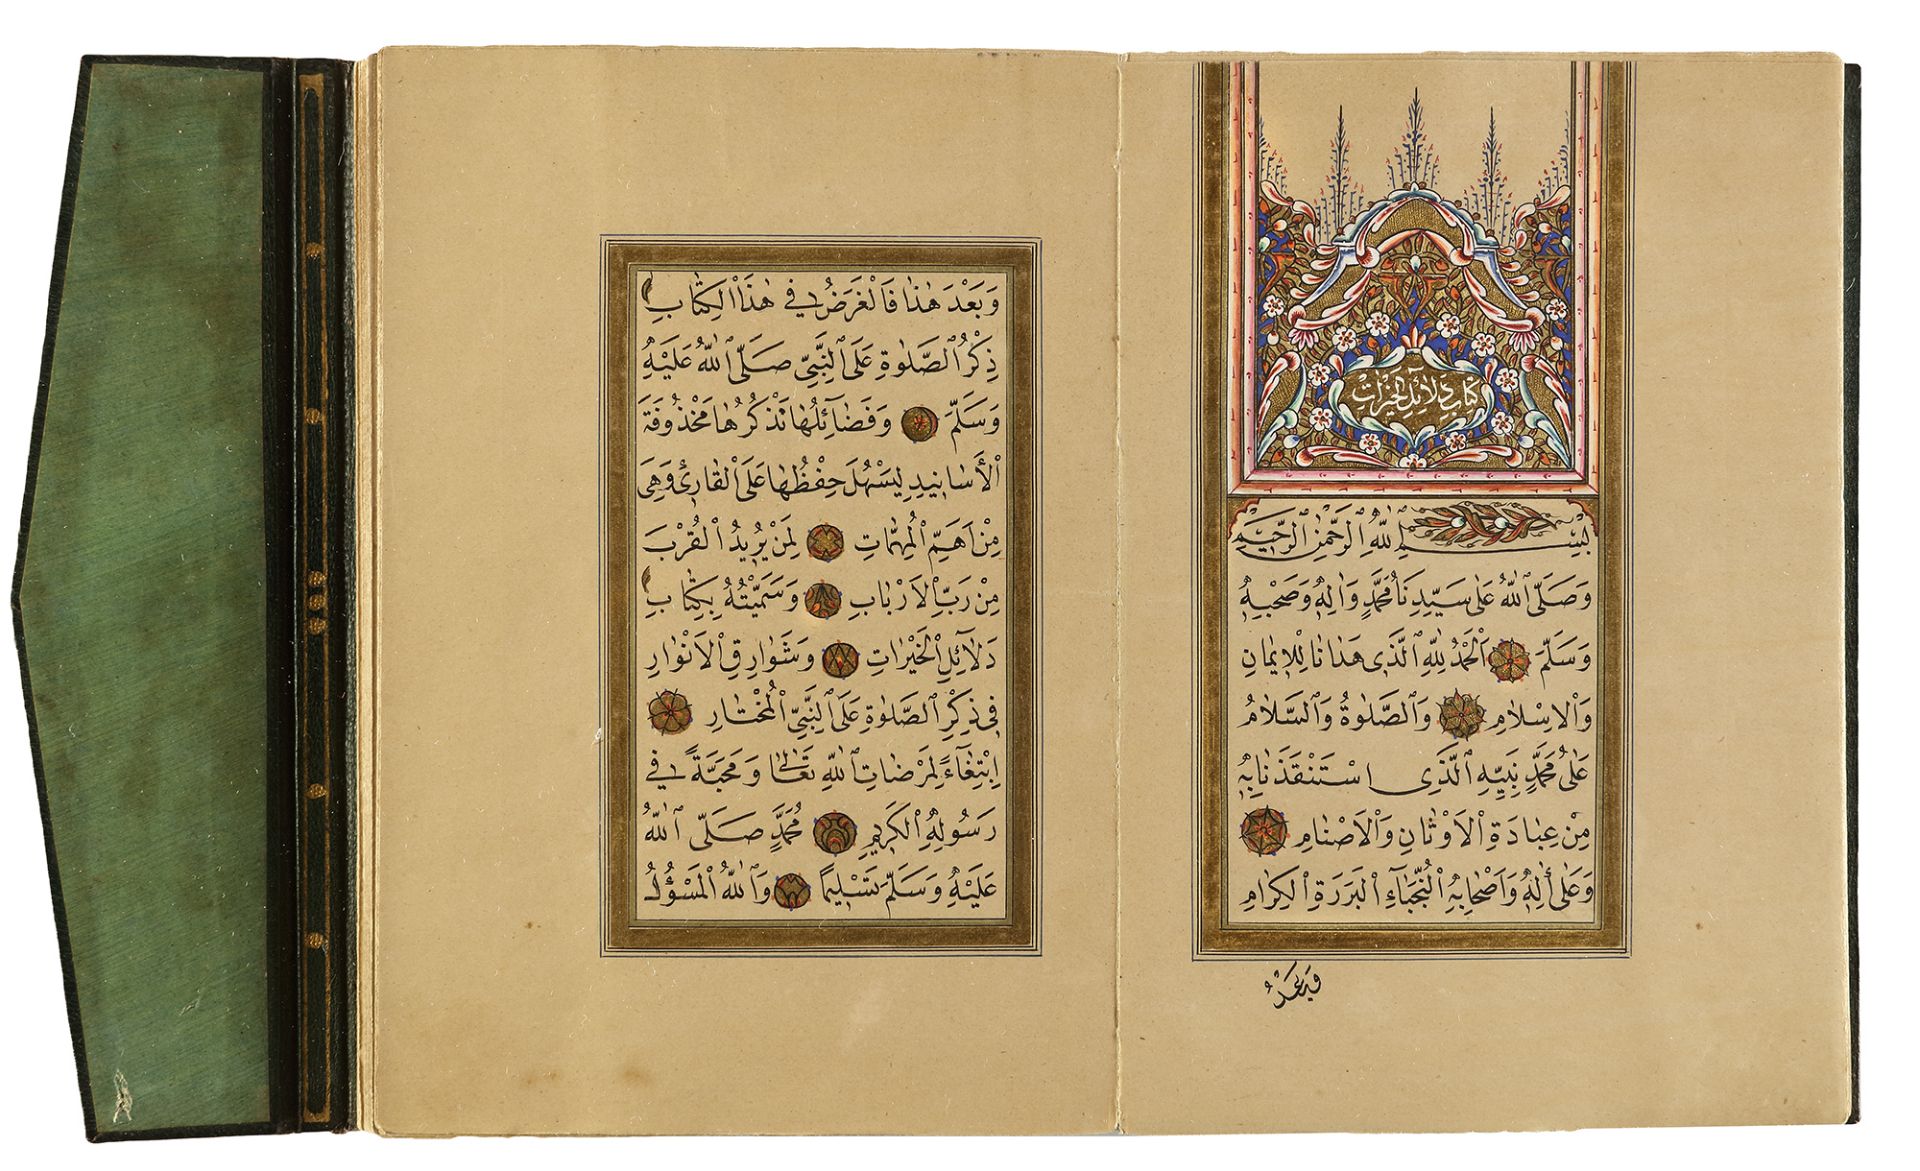 DALA’IL AL-KHAYRAT BY OSMAN HILMI STUDENT OF MUHAMMED ANWAR EFENDI, TURKEY, 1295 AH/1878 AD - Image 5 of 9